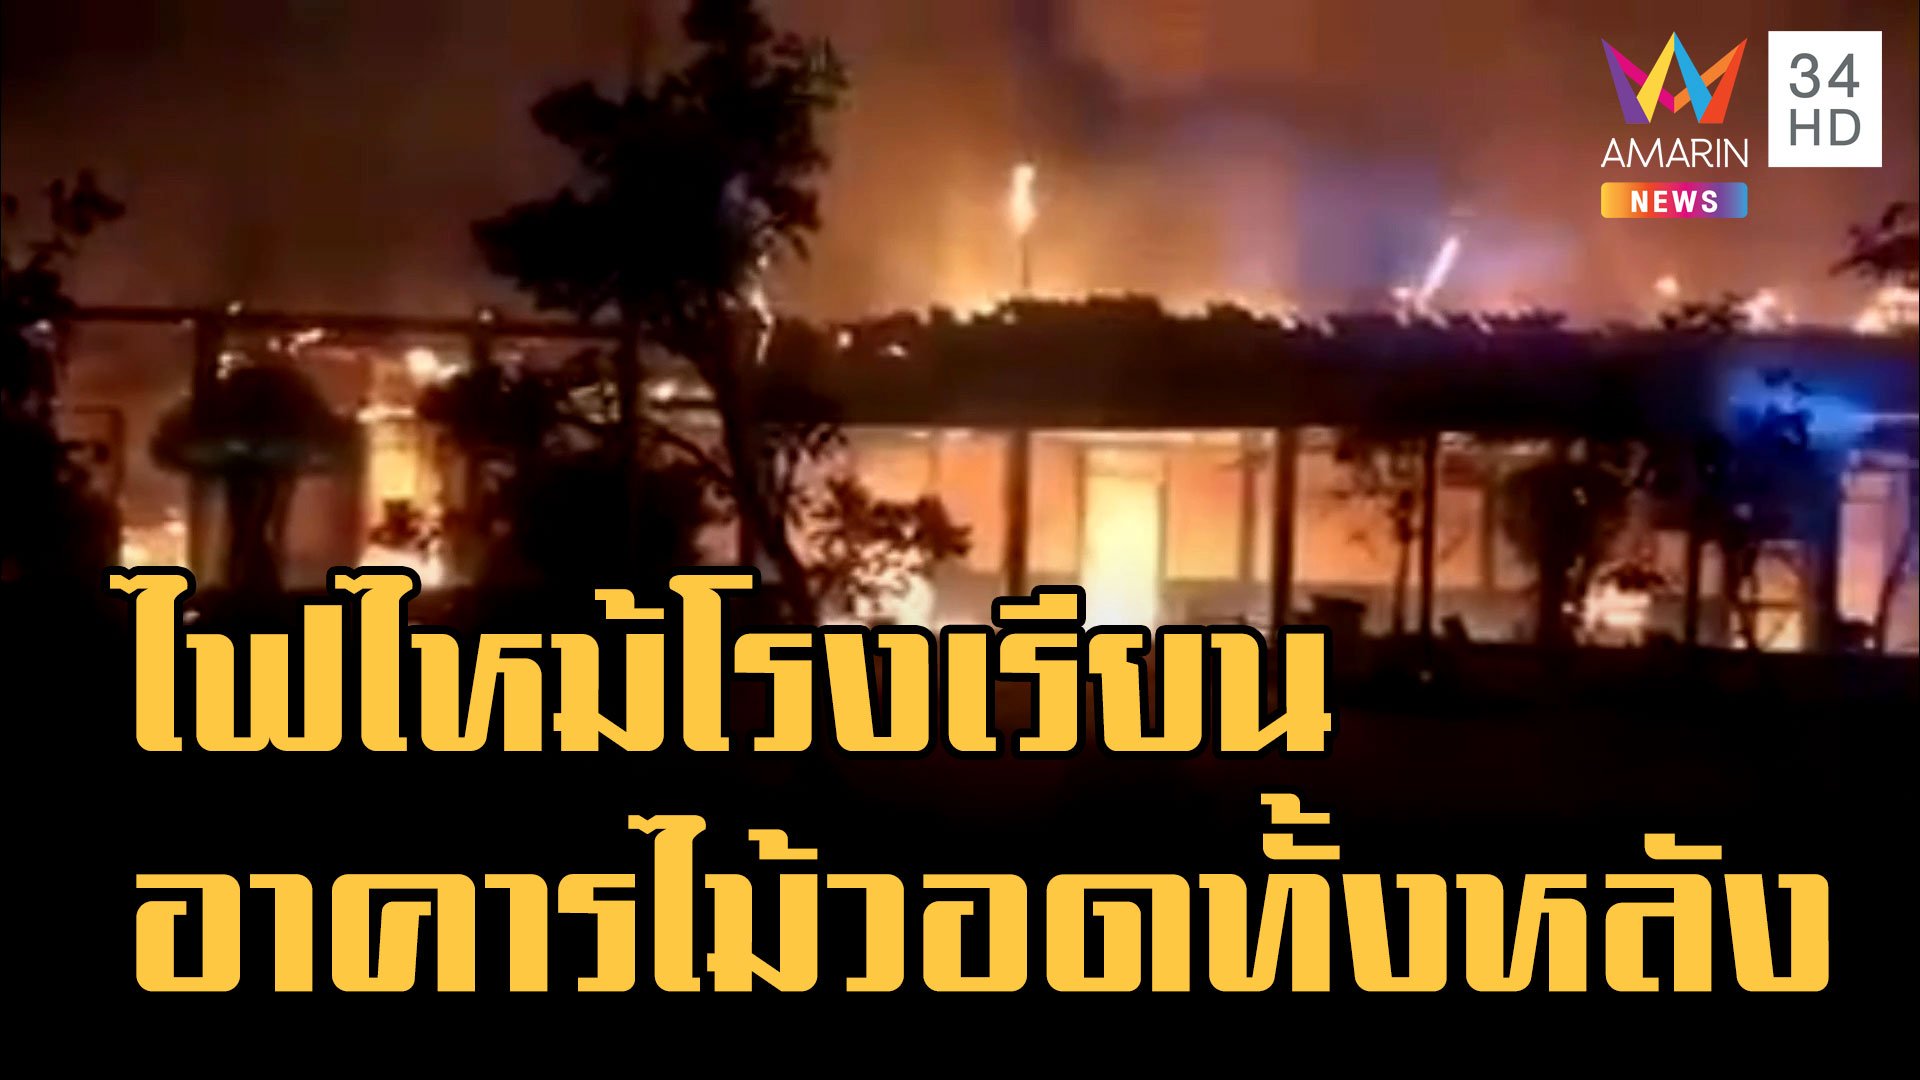 ไฟไหม้โรงเรียนบ้านหนองแวง เมืองบุรีรัมย์ อาคารไม้วอดทั้งหลัง | ข่าวเที่ยงอมรินทร์ | 17 ม.ค. 66 | AMARIN TVHD34